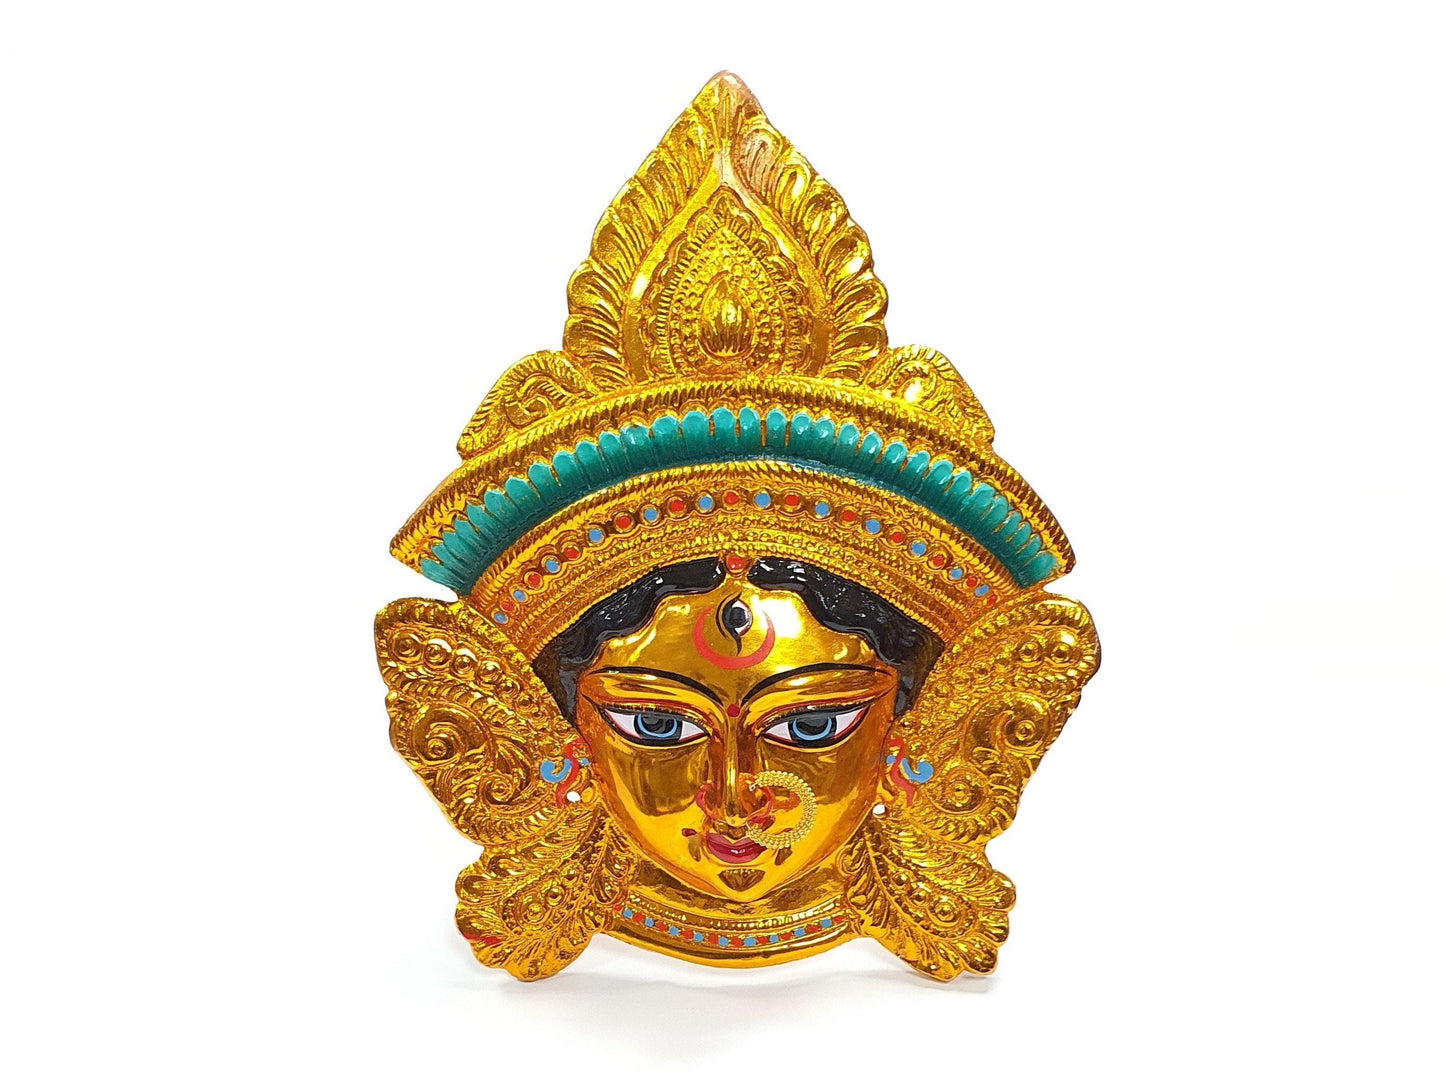 Gold Kali Maa Durga face